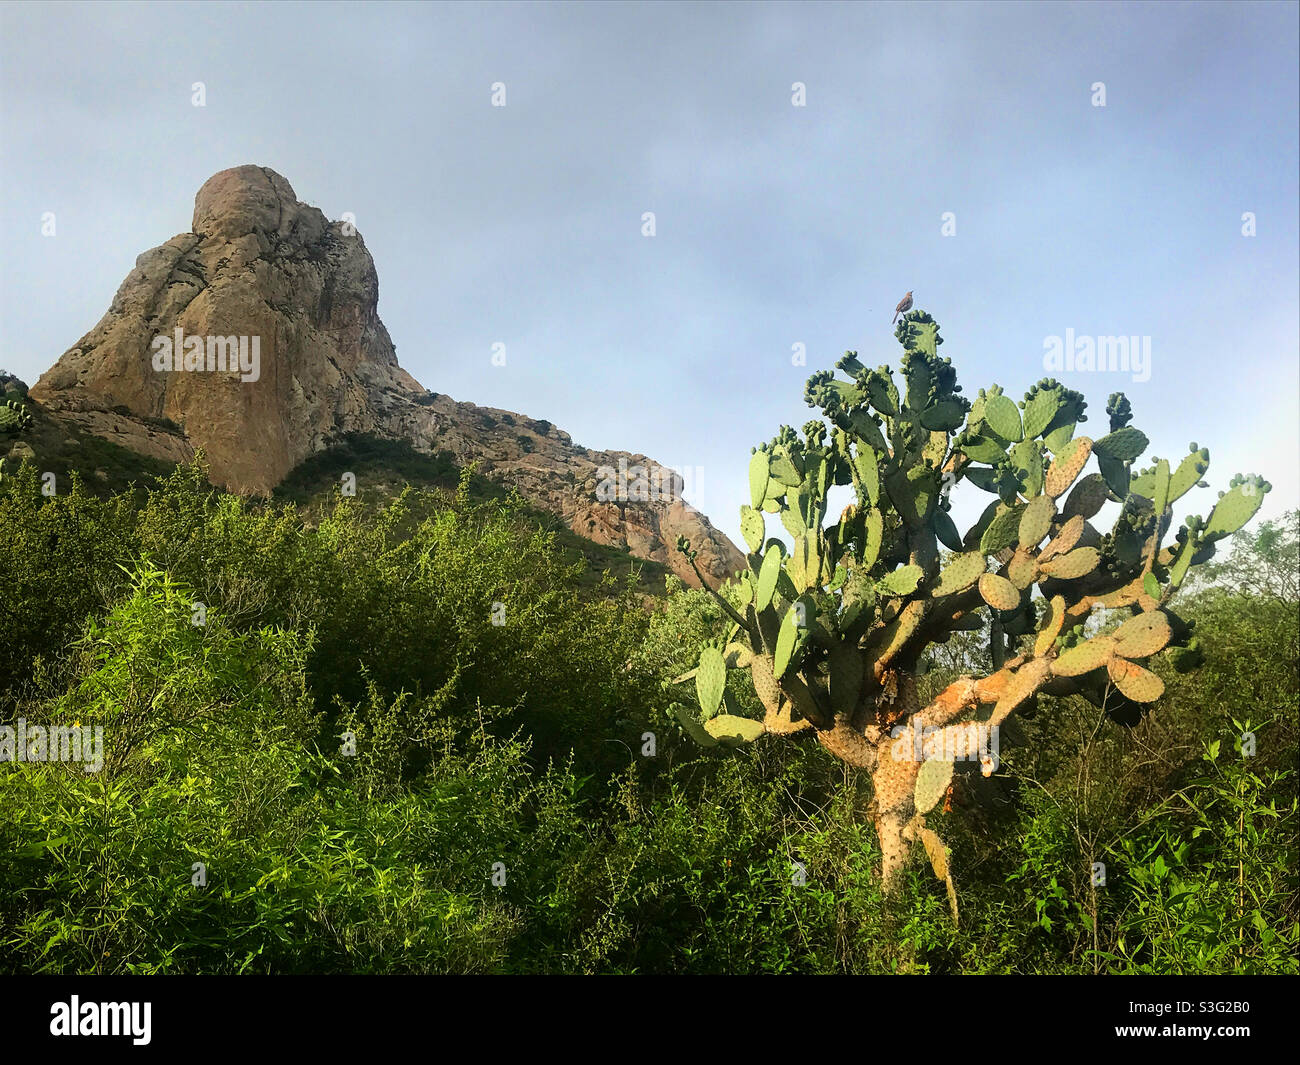 A nopal cactus in the desert in Queretaro, Mexico Stock Photo